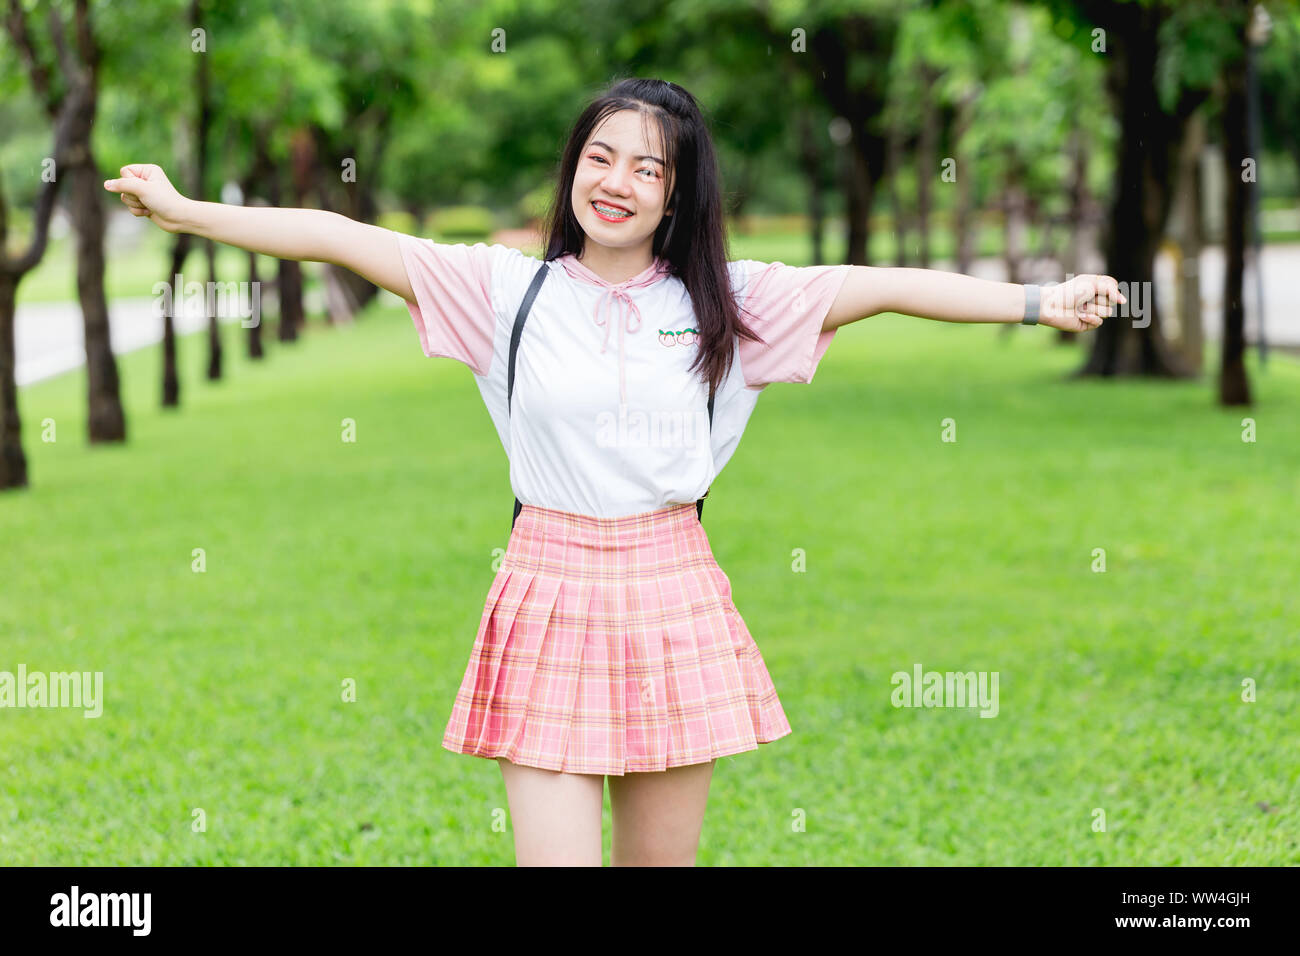 Étudiant asiatique teen brace dents smiling happy smile outdoor Banque D'Images